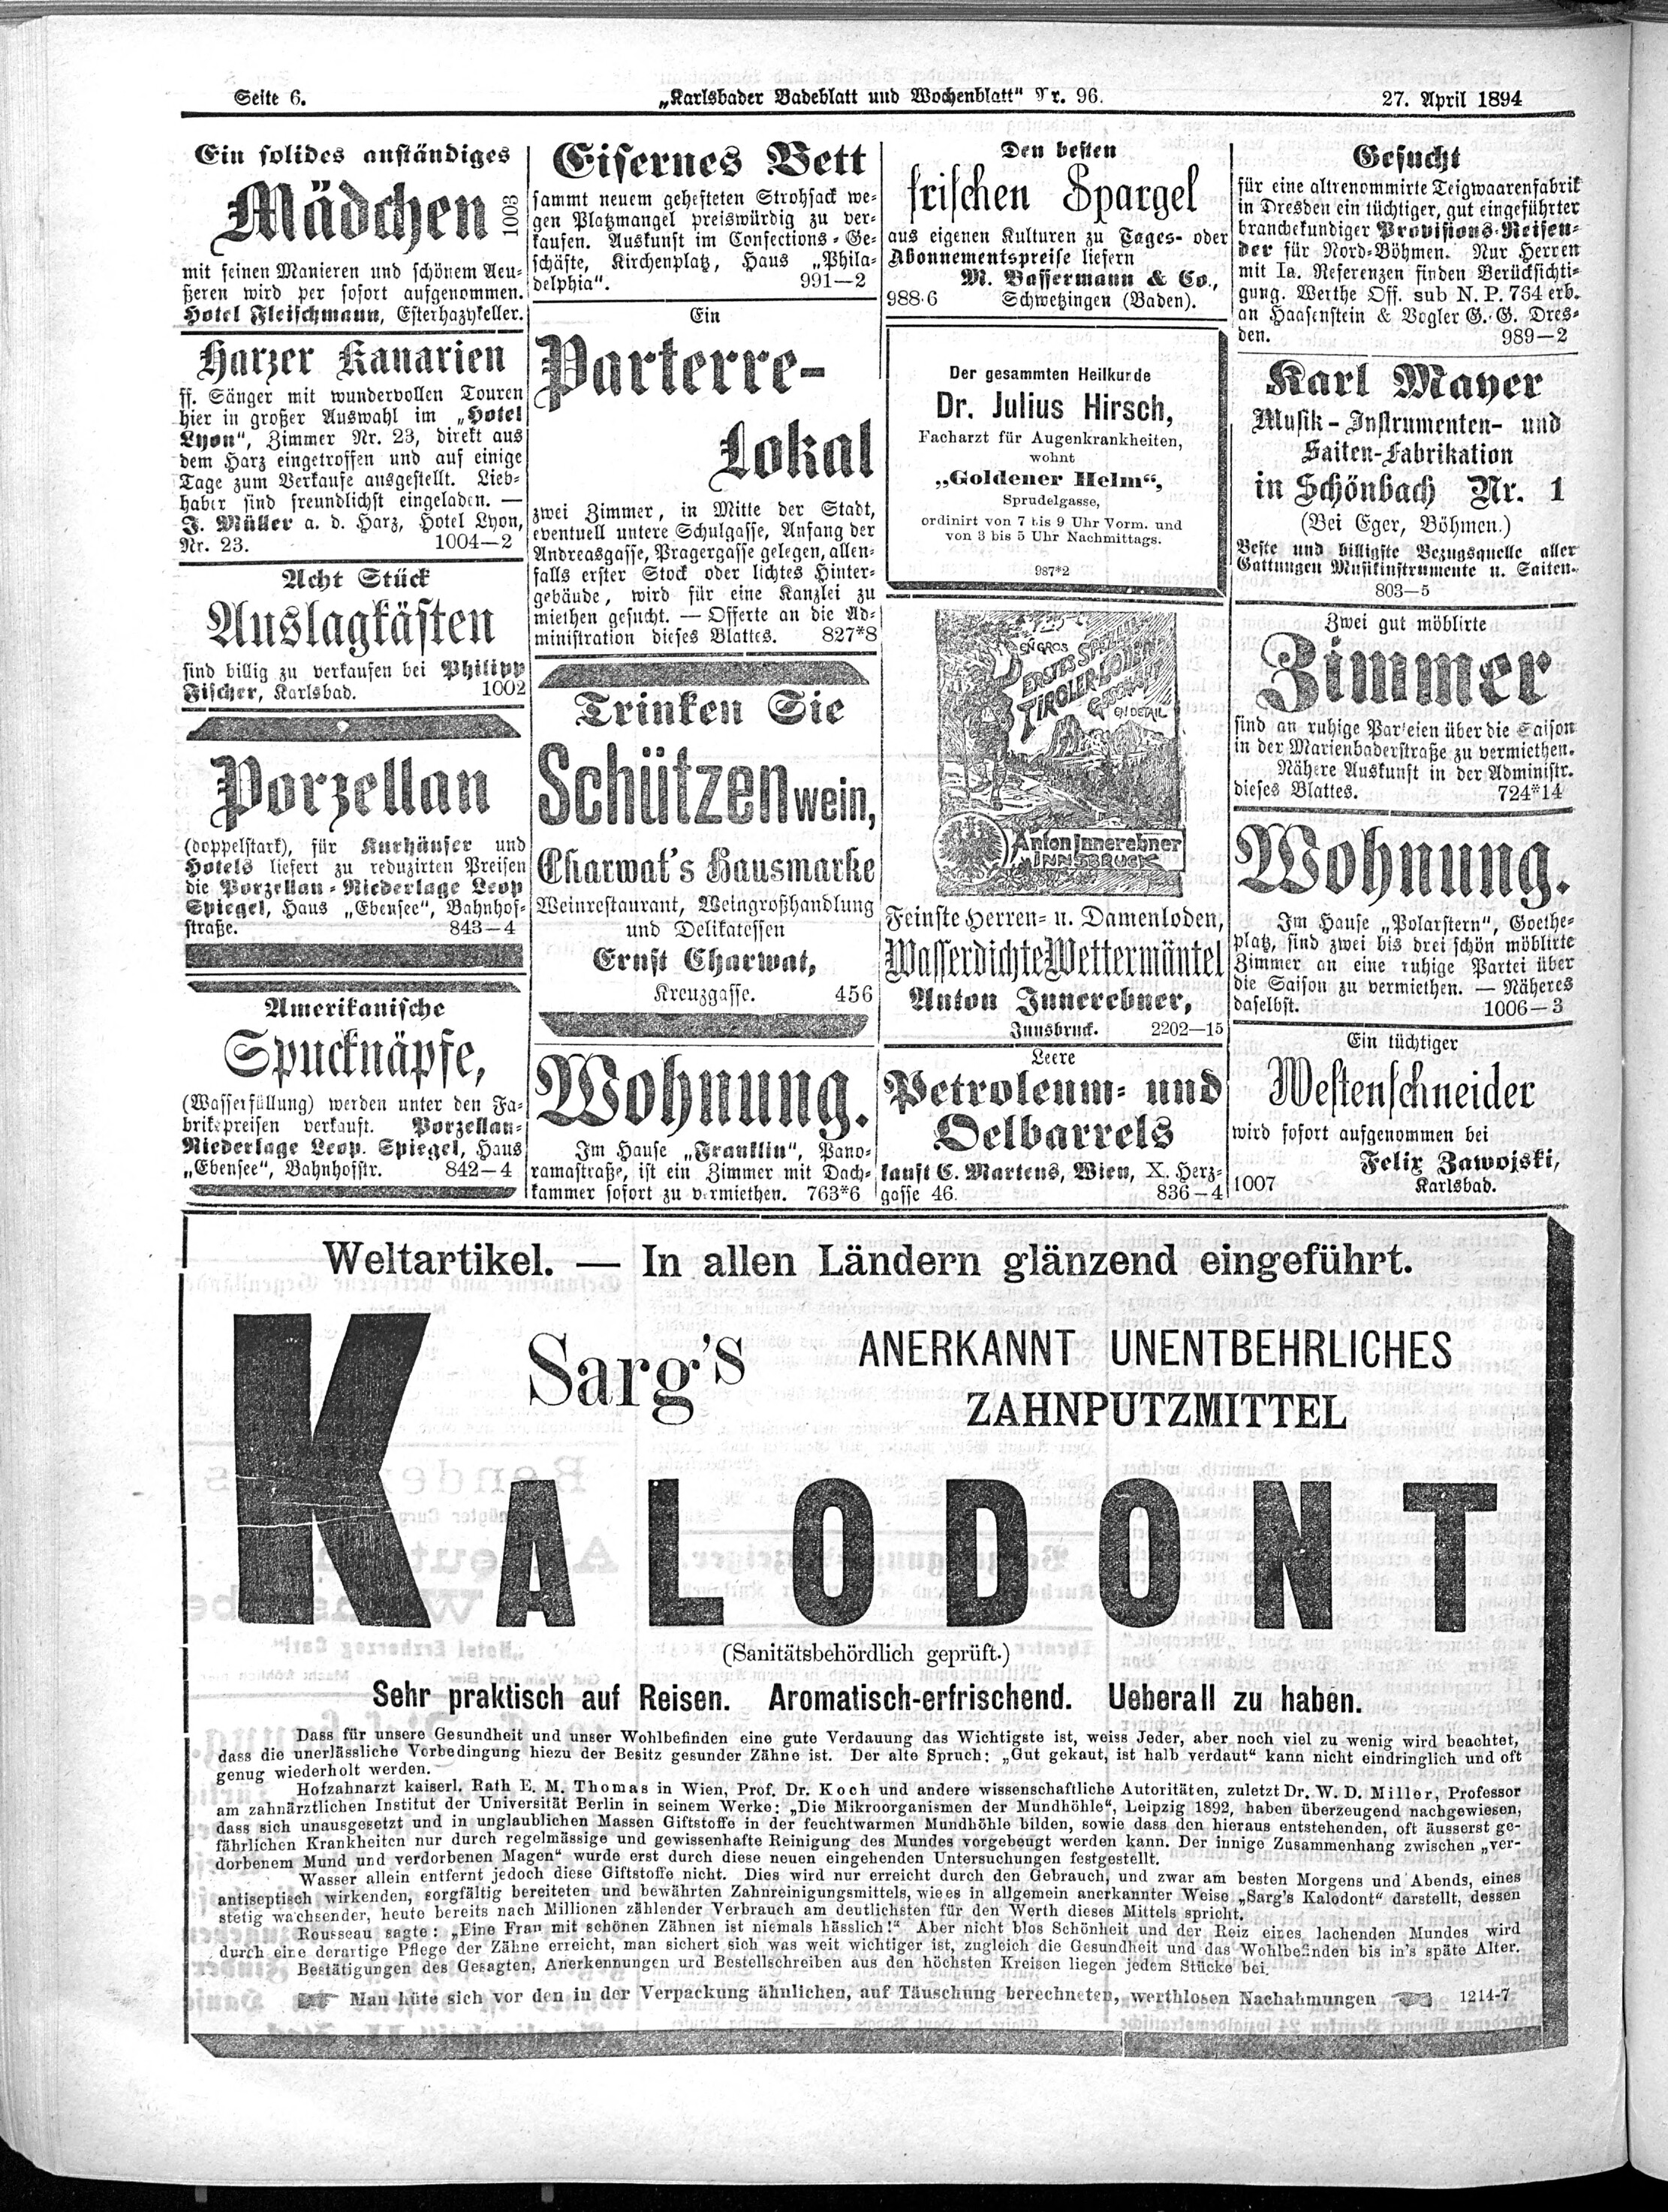 6. karlsbader-badeblatt-1894-04-27-n96_3950